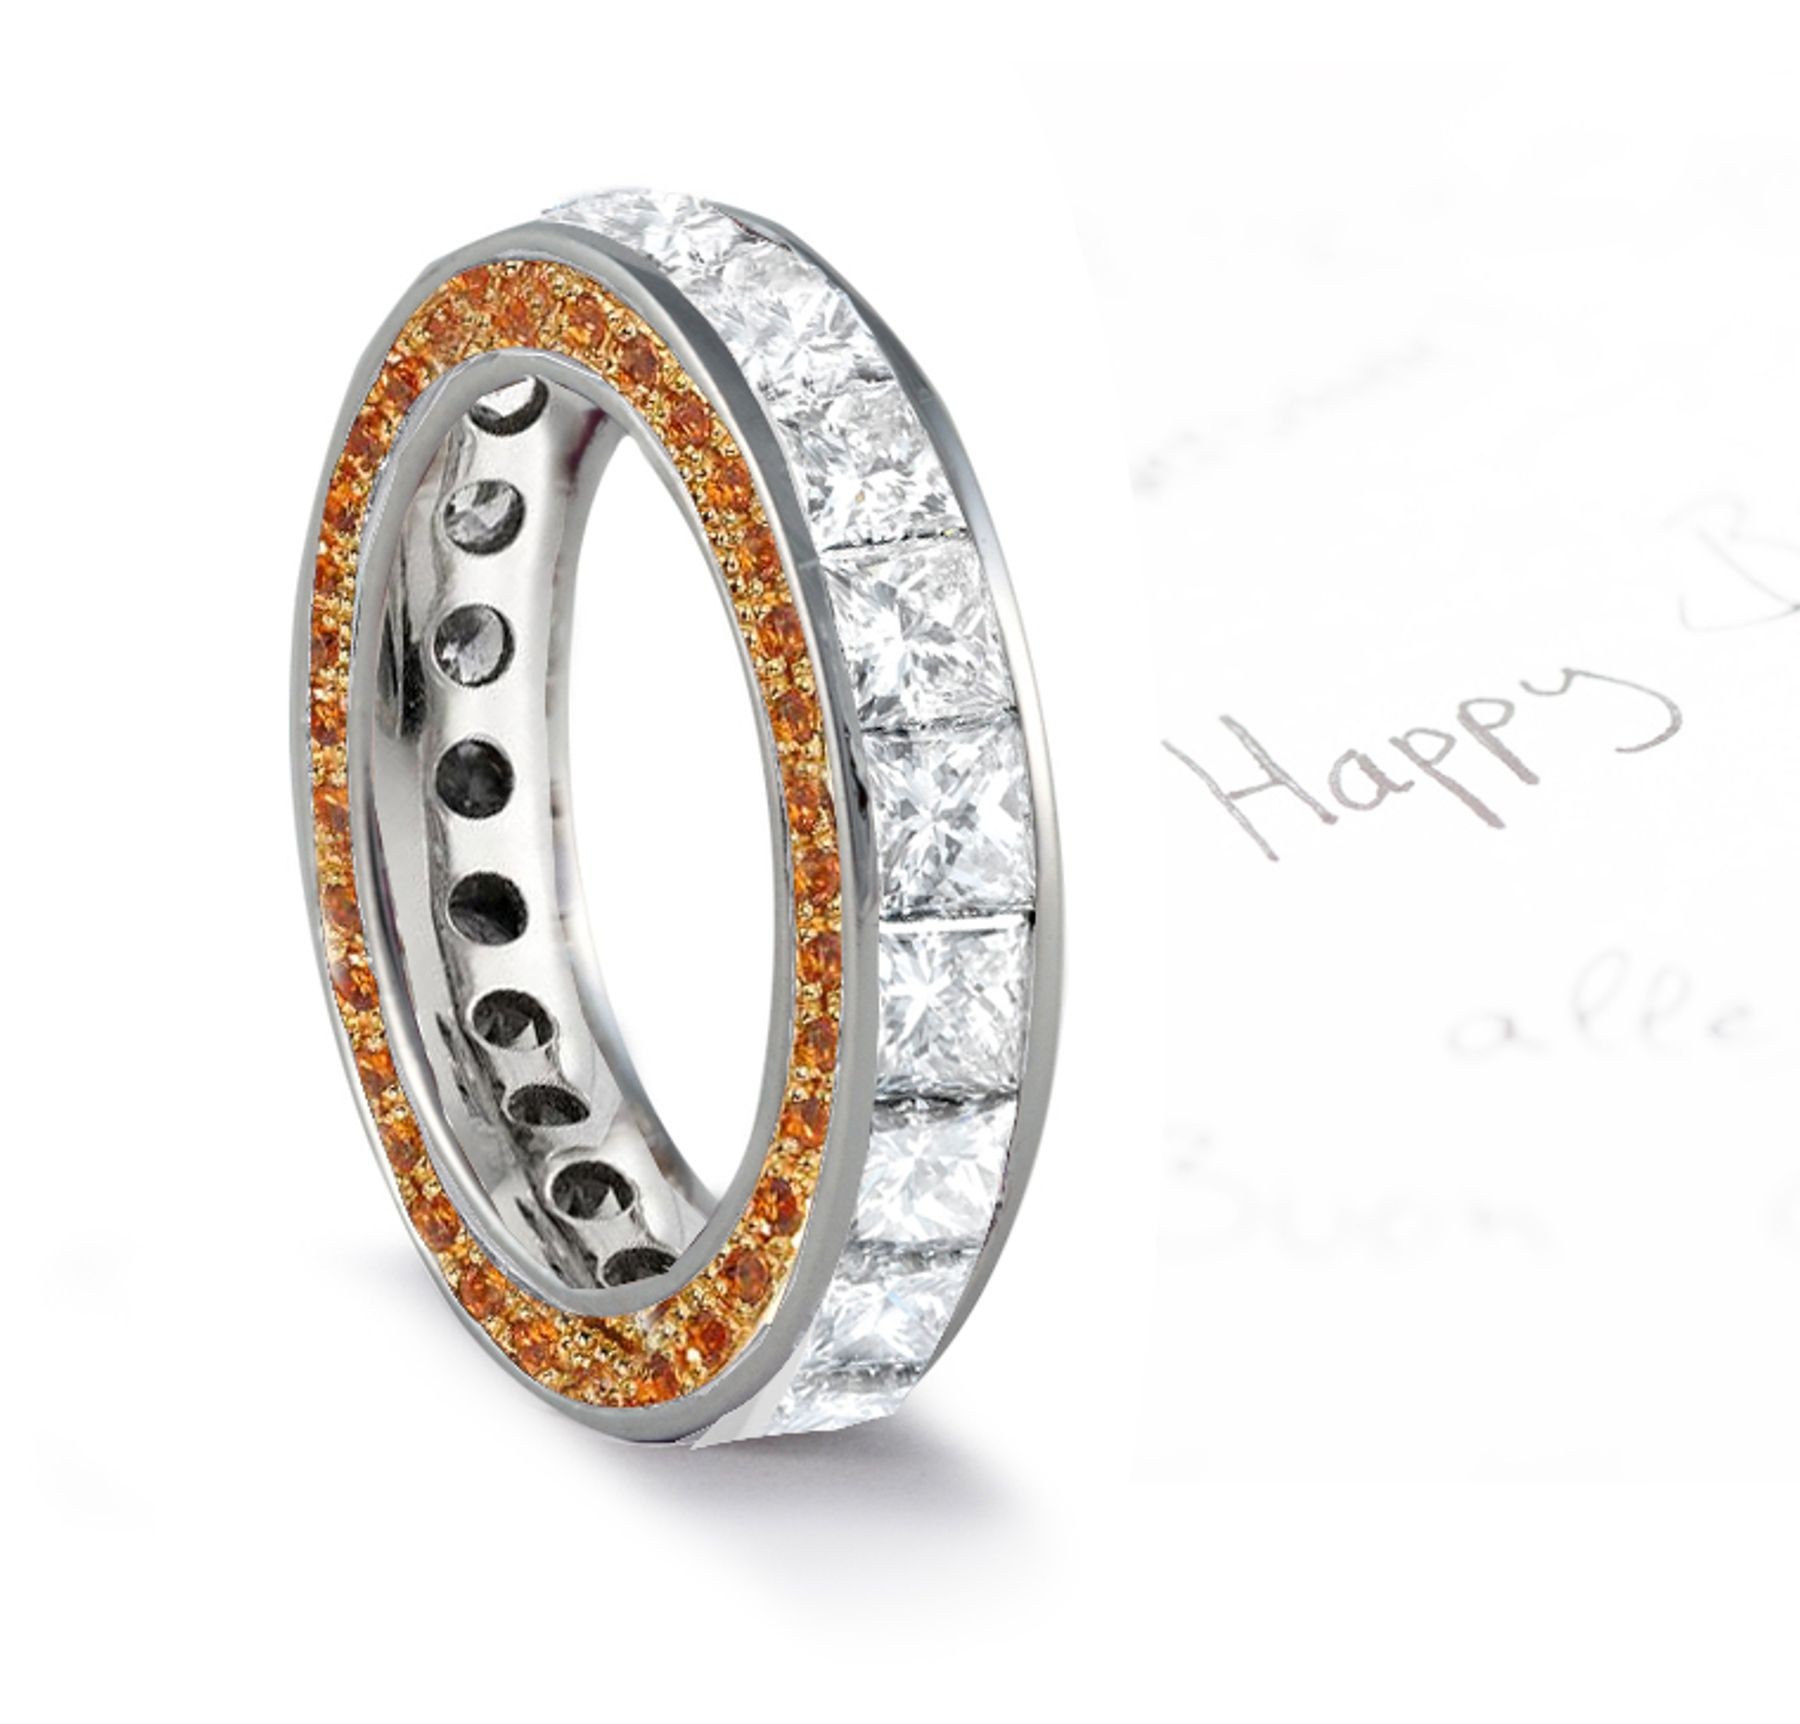 Micro pave Halo Round & Princess Cut Diamond & Orange Sapphire Eternity Rings